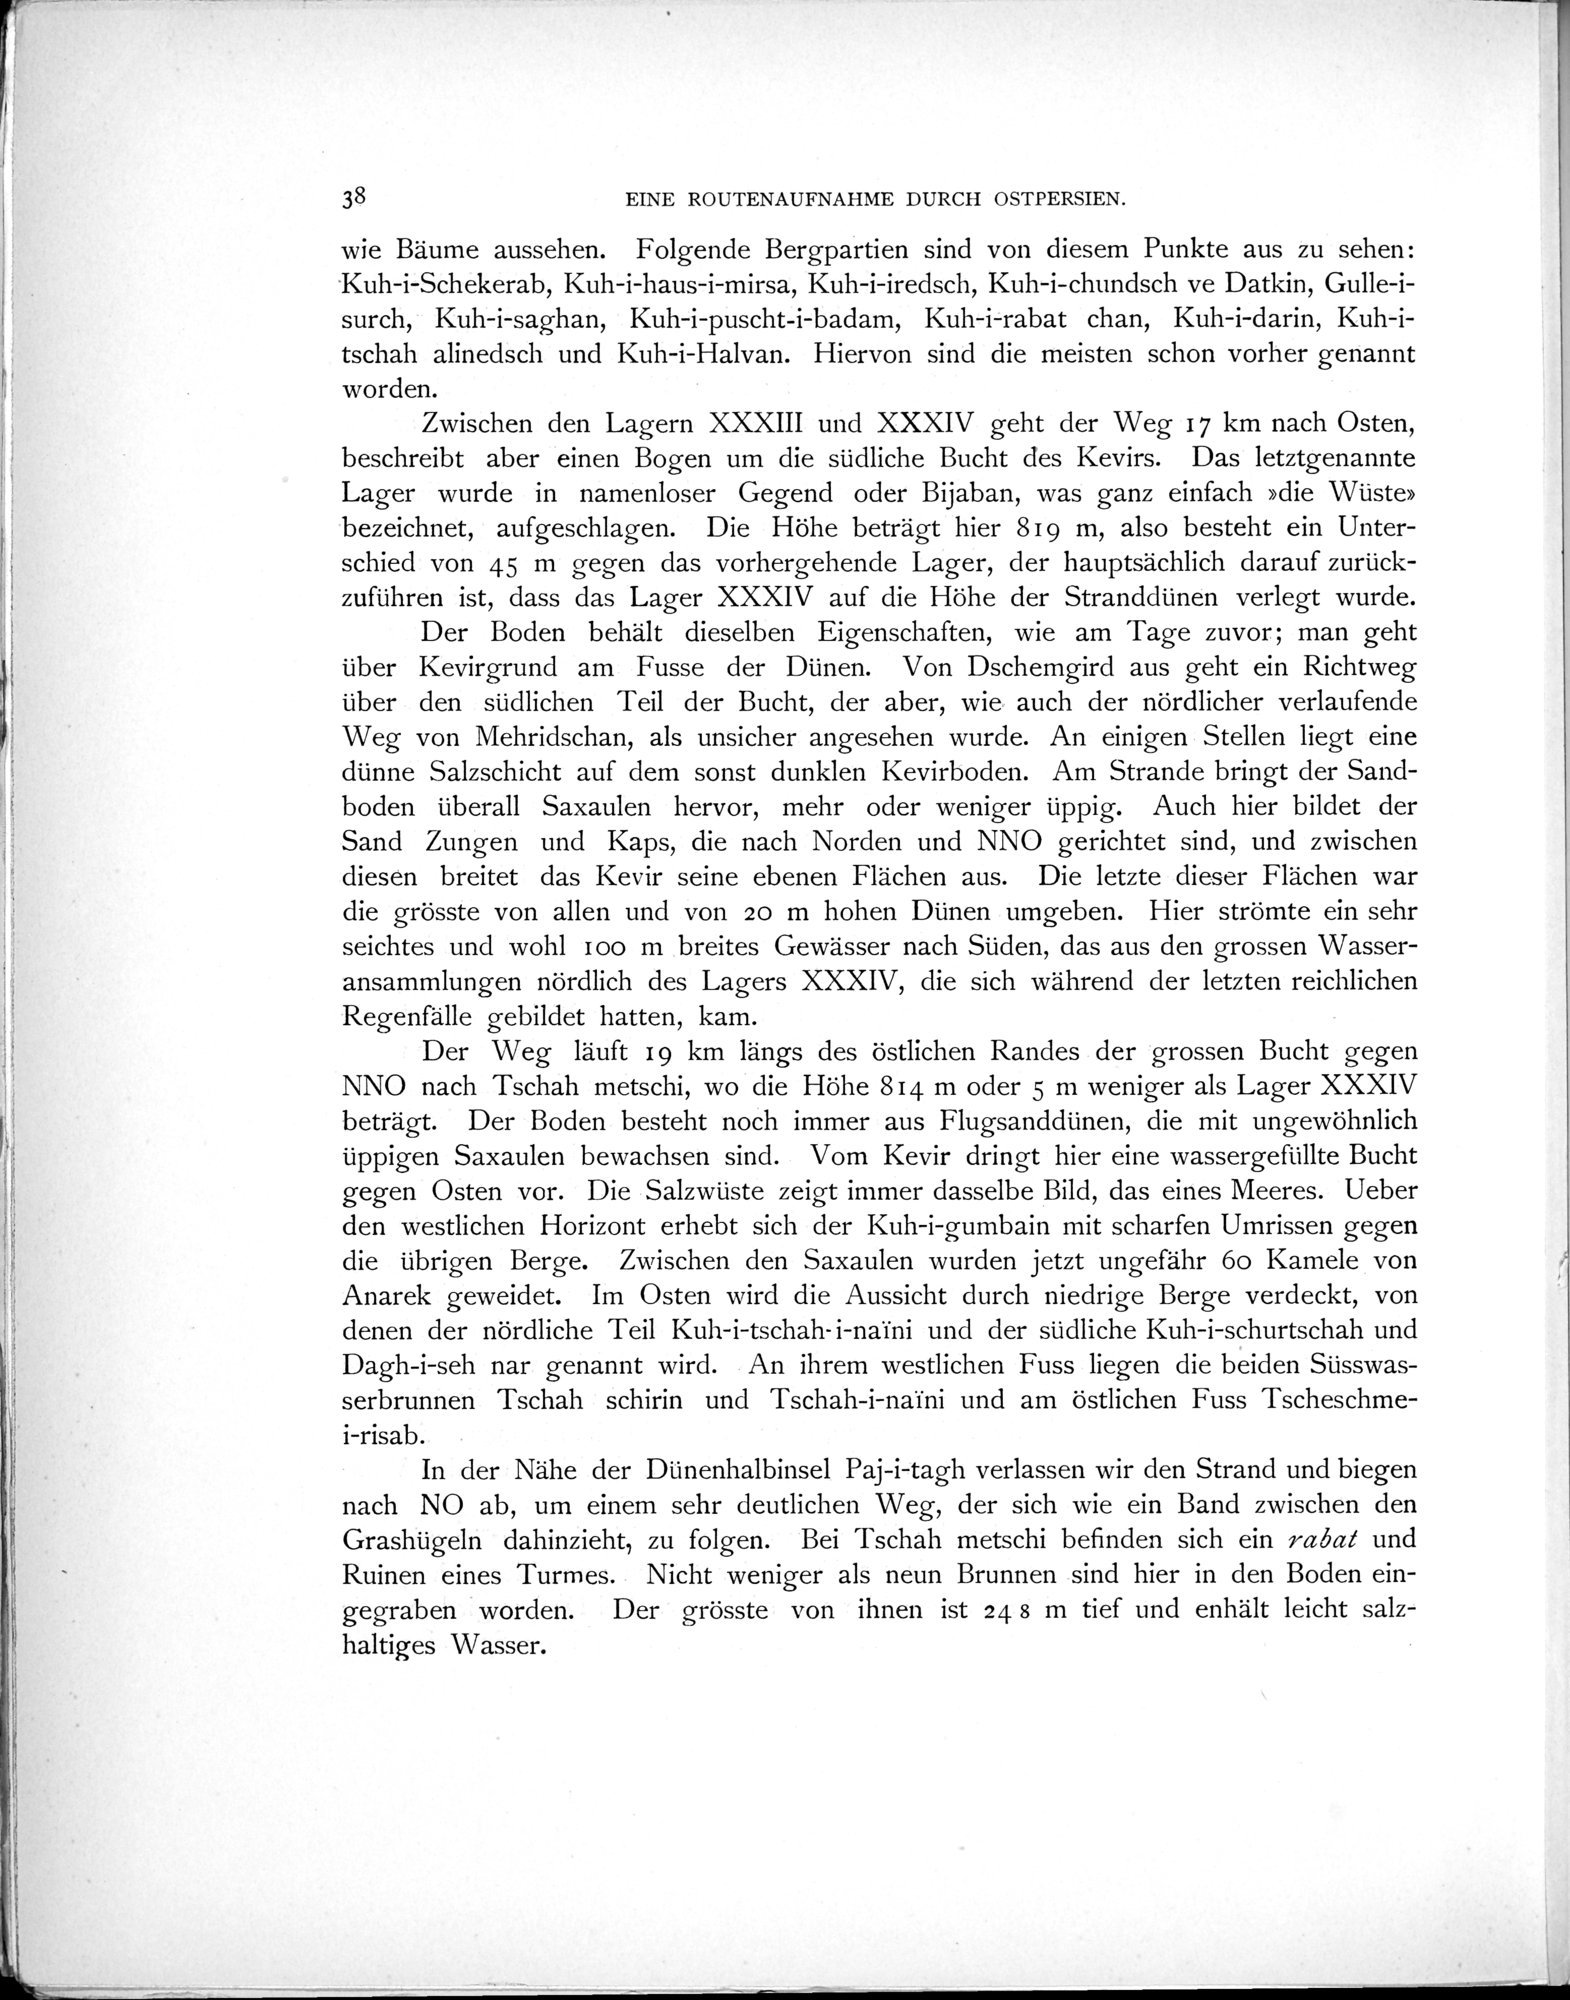 Eine Routenaufnahme durch Ostpersien : vol.1 / Page 104 (Grayscale High Resolution Image)